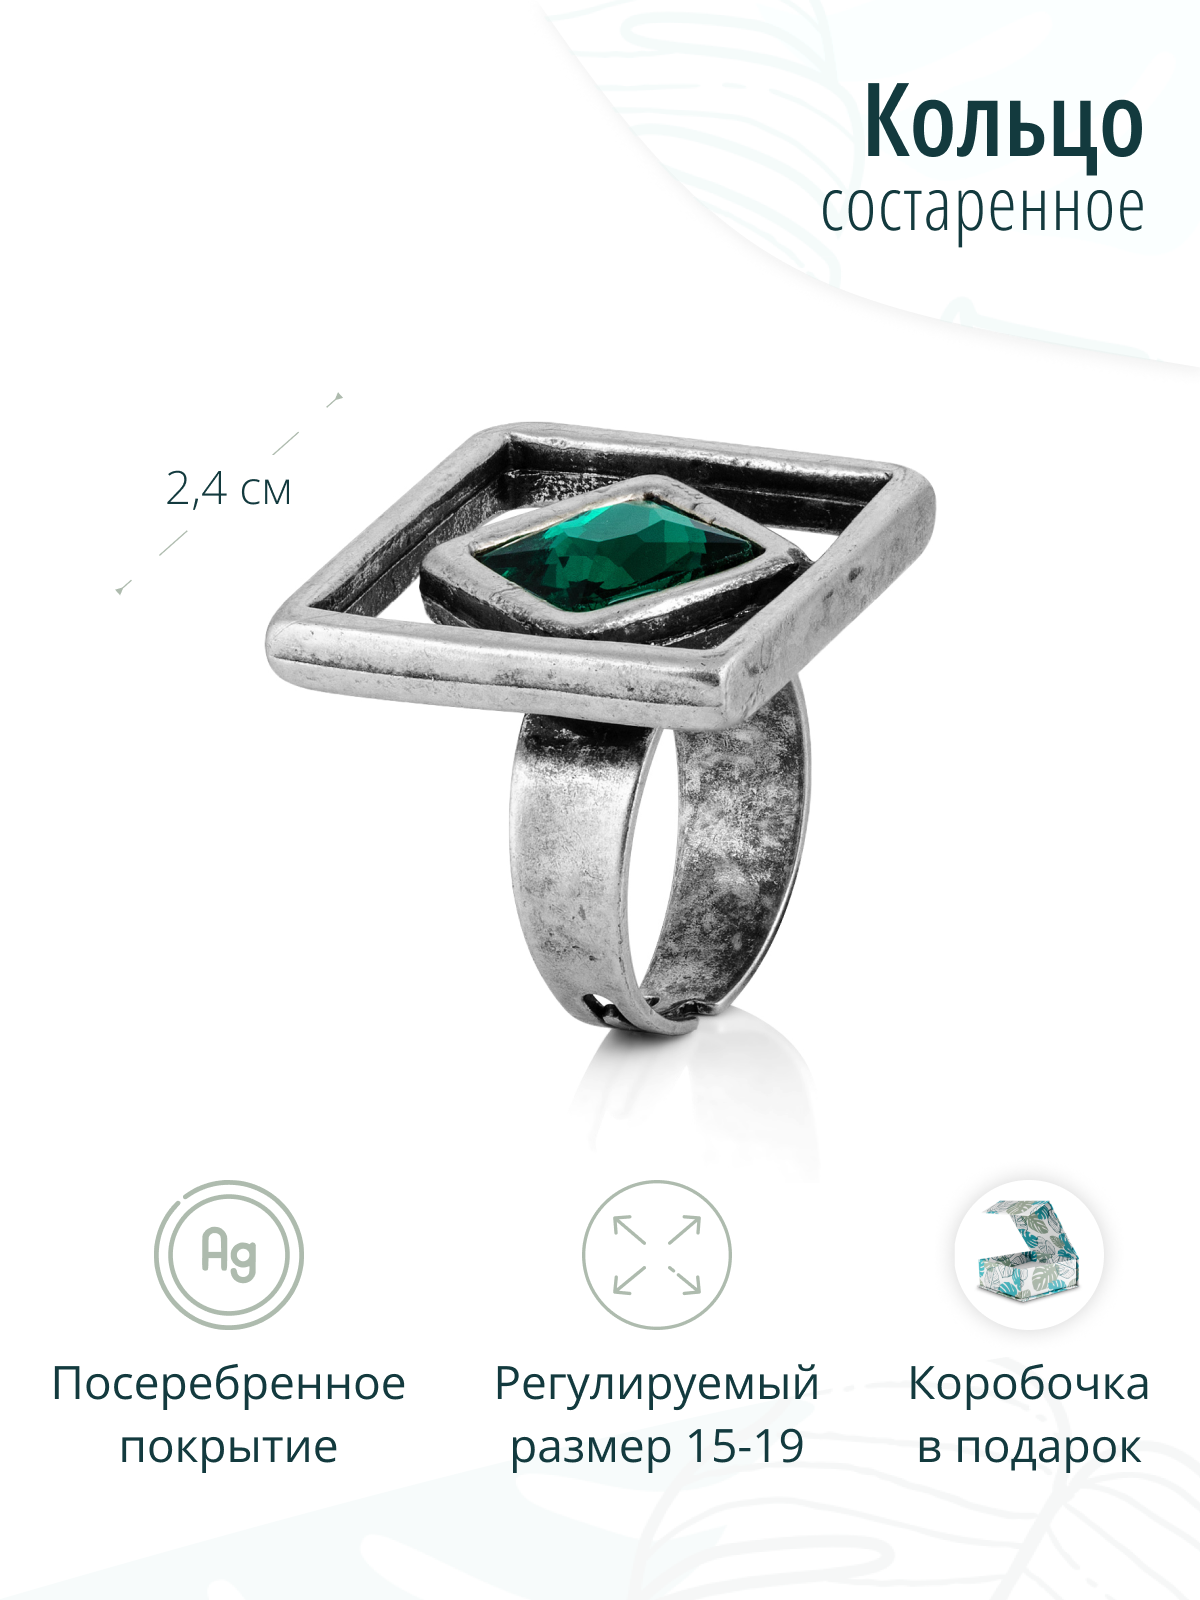 Женское дизайнерское посеребренное кольцо с зеленым кристаллом